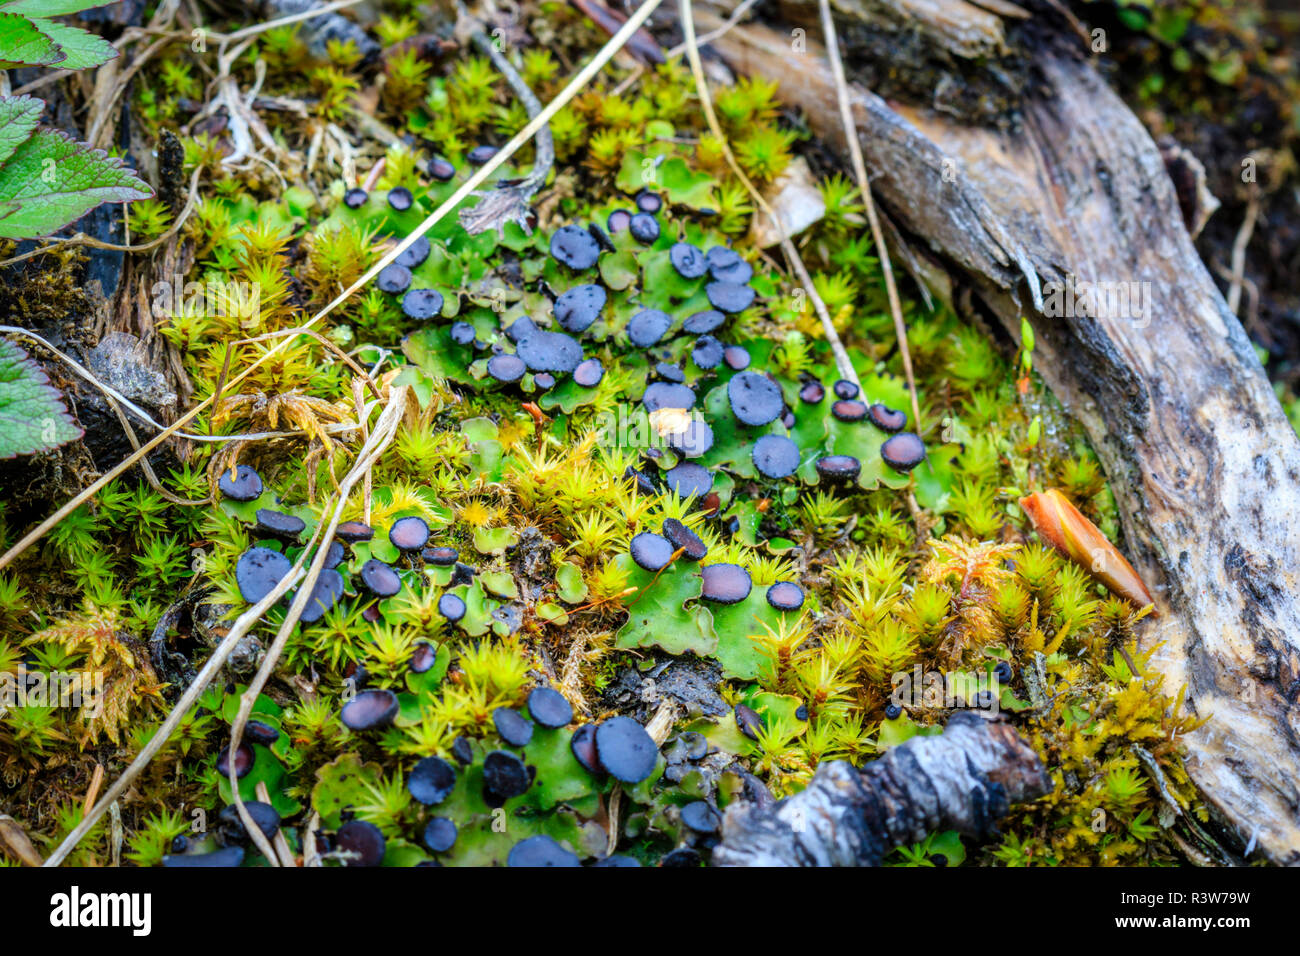 USA, Alaska. Lichen and moss on a tree stump. Stock Photo